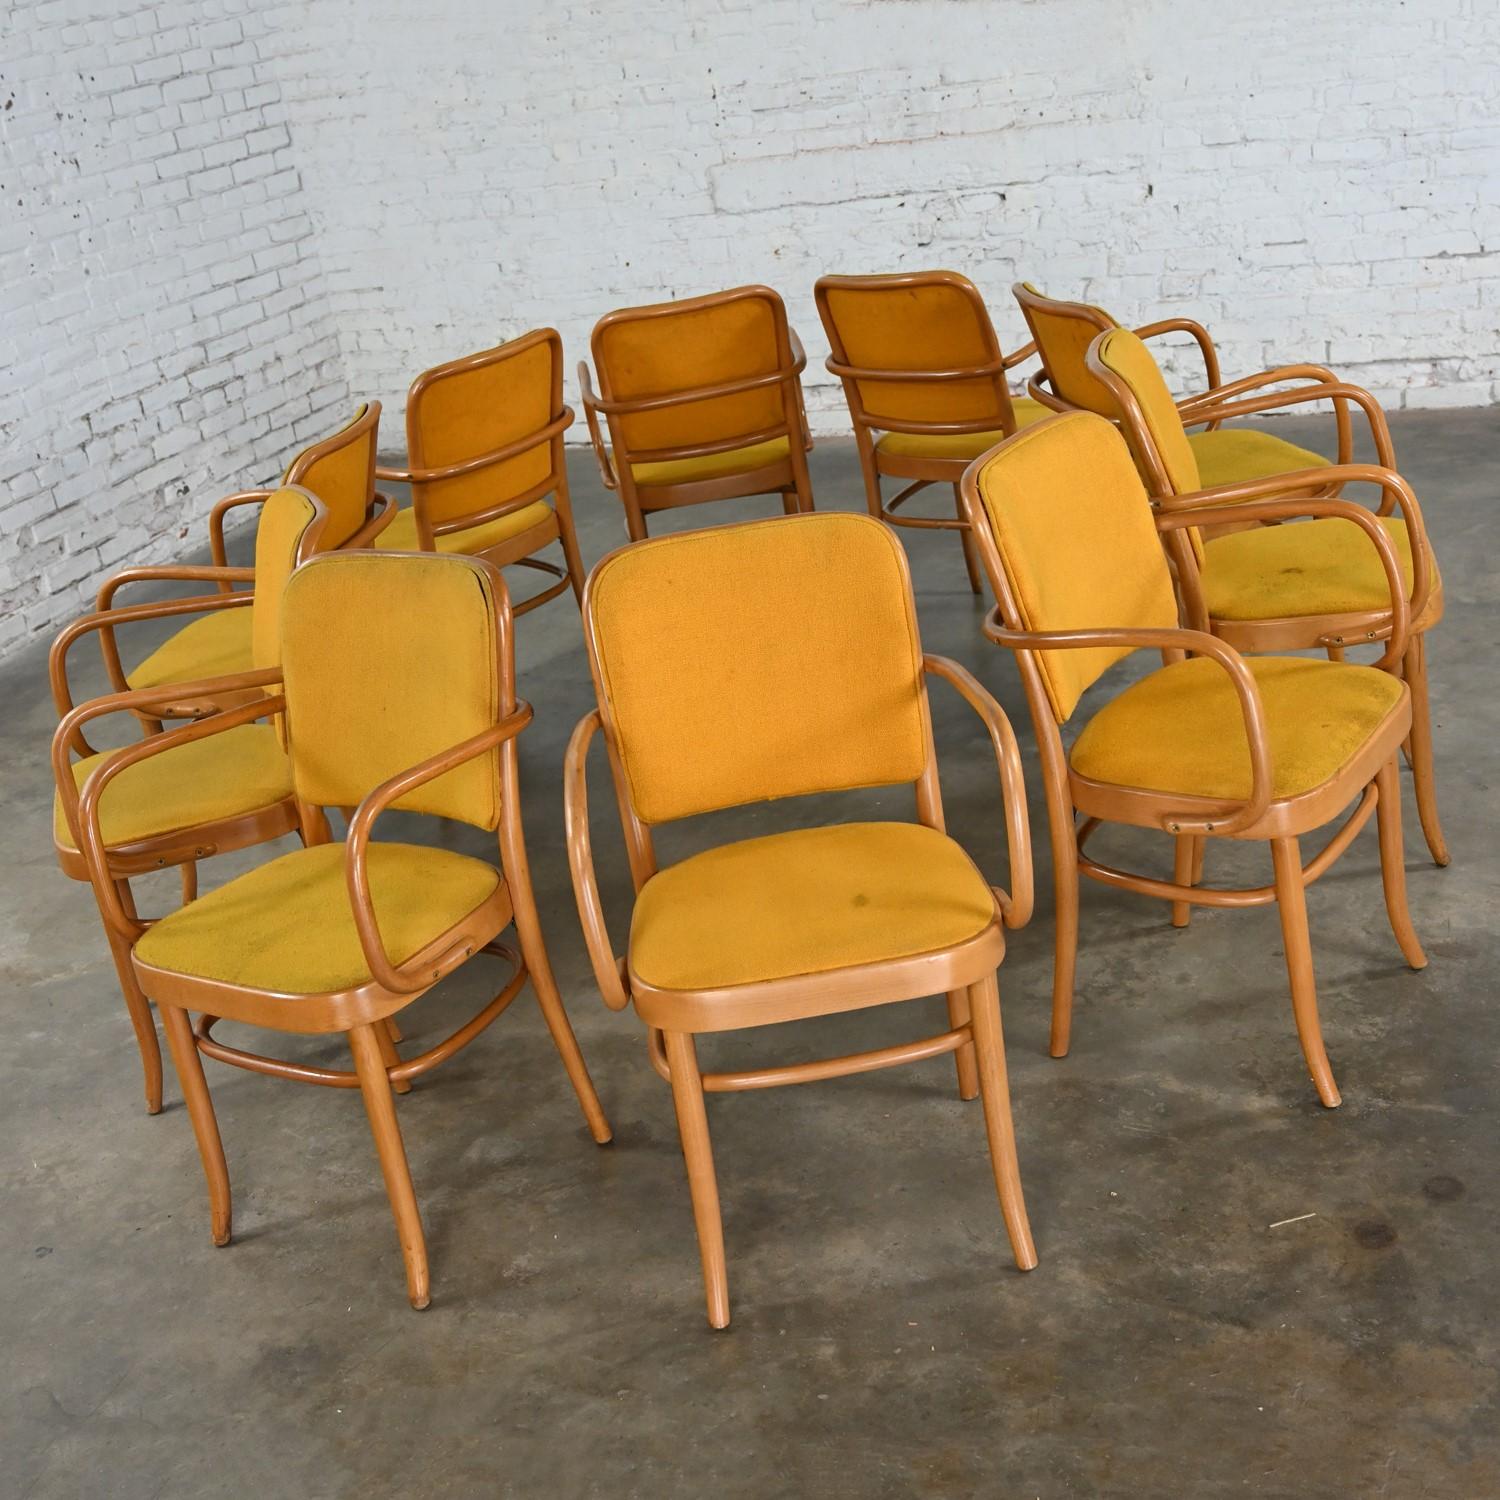 Merveilleuses chaises de salle à manger en hêtre courbé de style Thonet Josef Hoffman Prague 811 par Falcon Products Inc, lot de 10. Byit, en gardant à l'esprit qu'il s'agit d'une pièce vintage et non pas neuve, qui présentera donc des signes